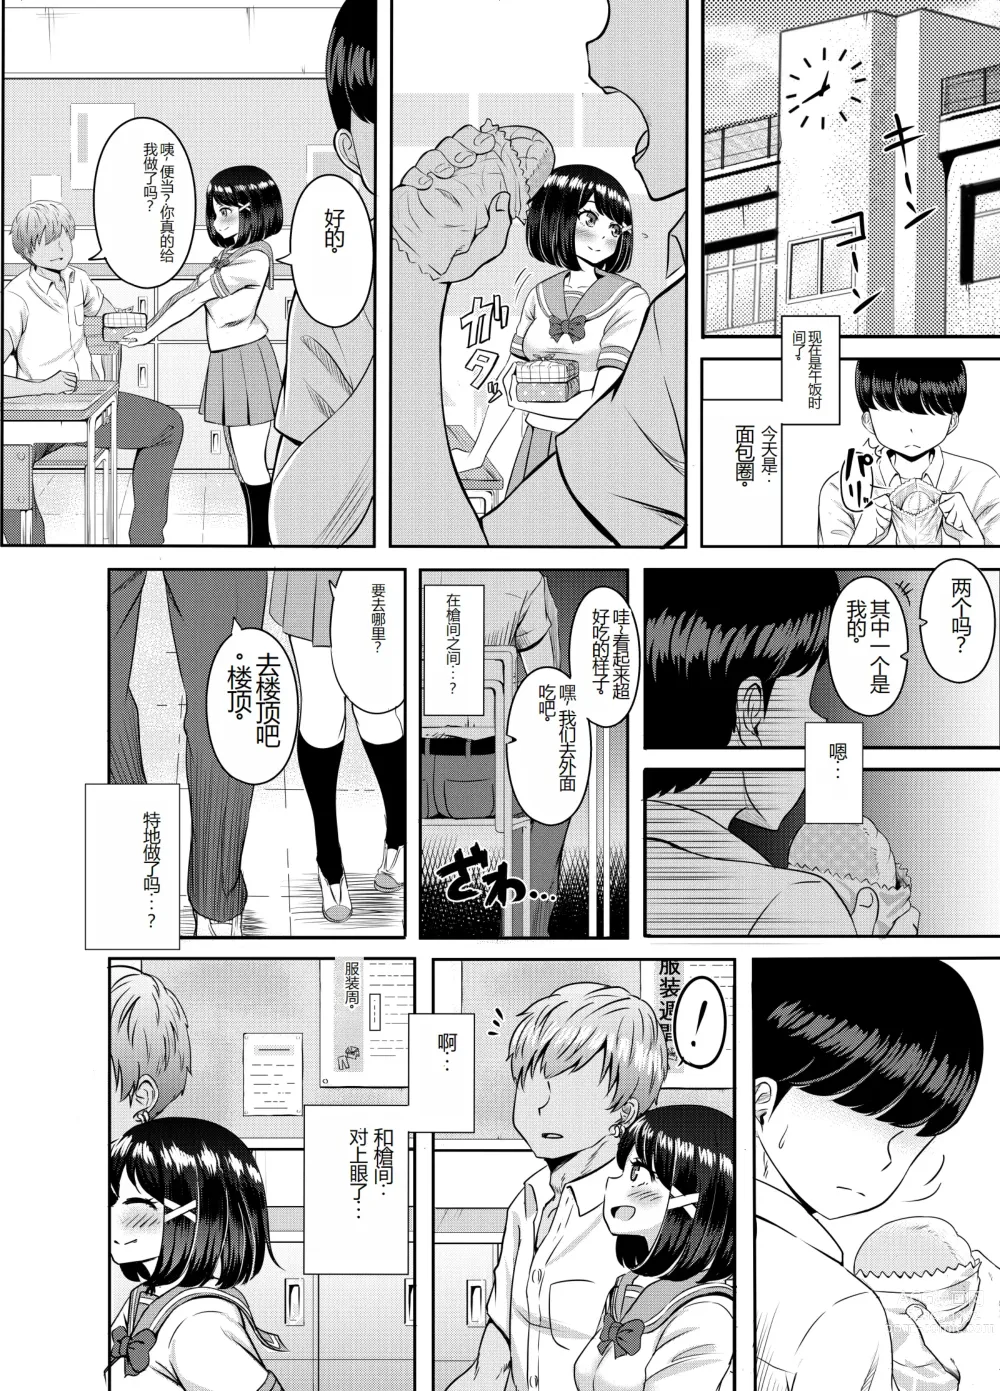 Page 52 of doujinshi 2-nen 3-kumi